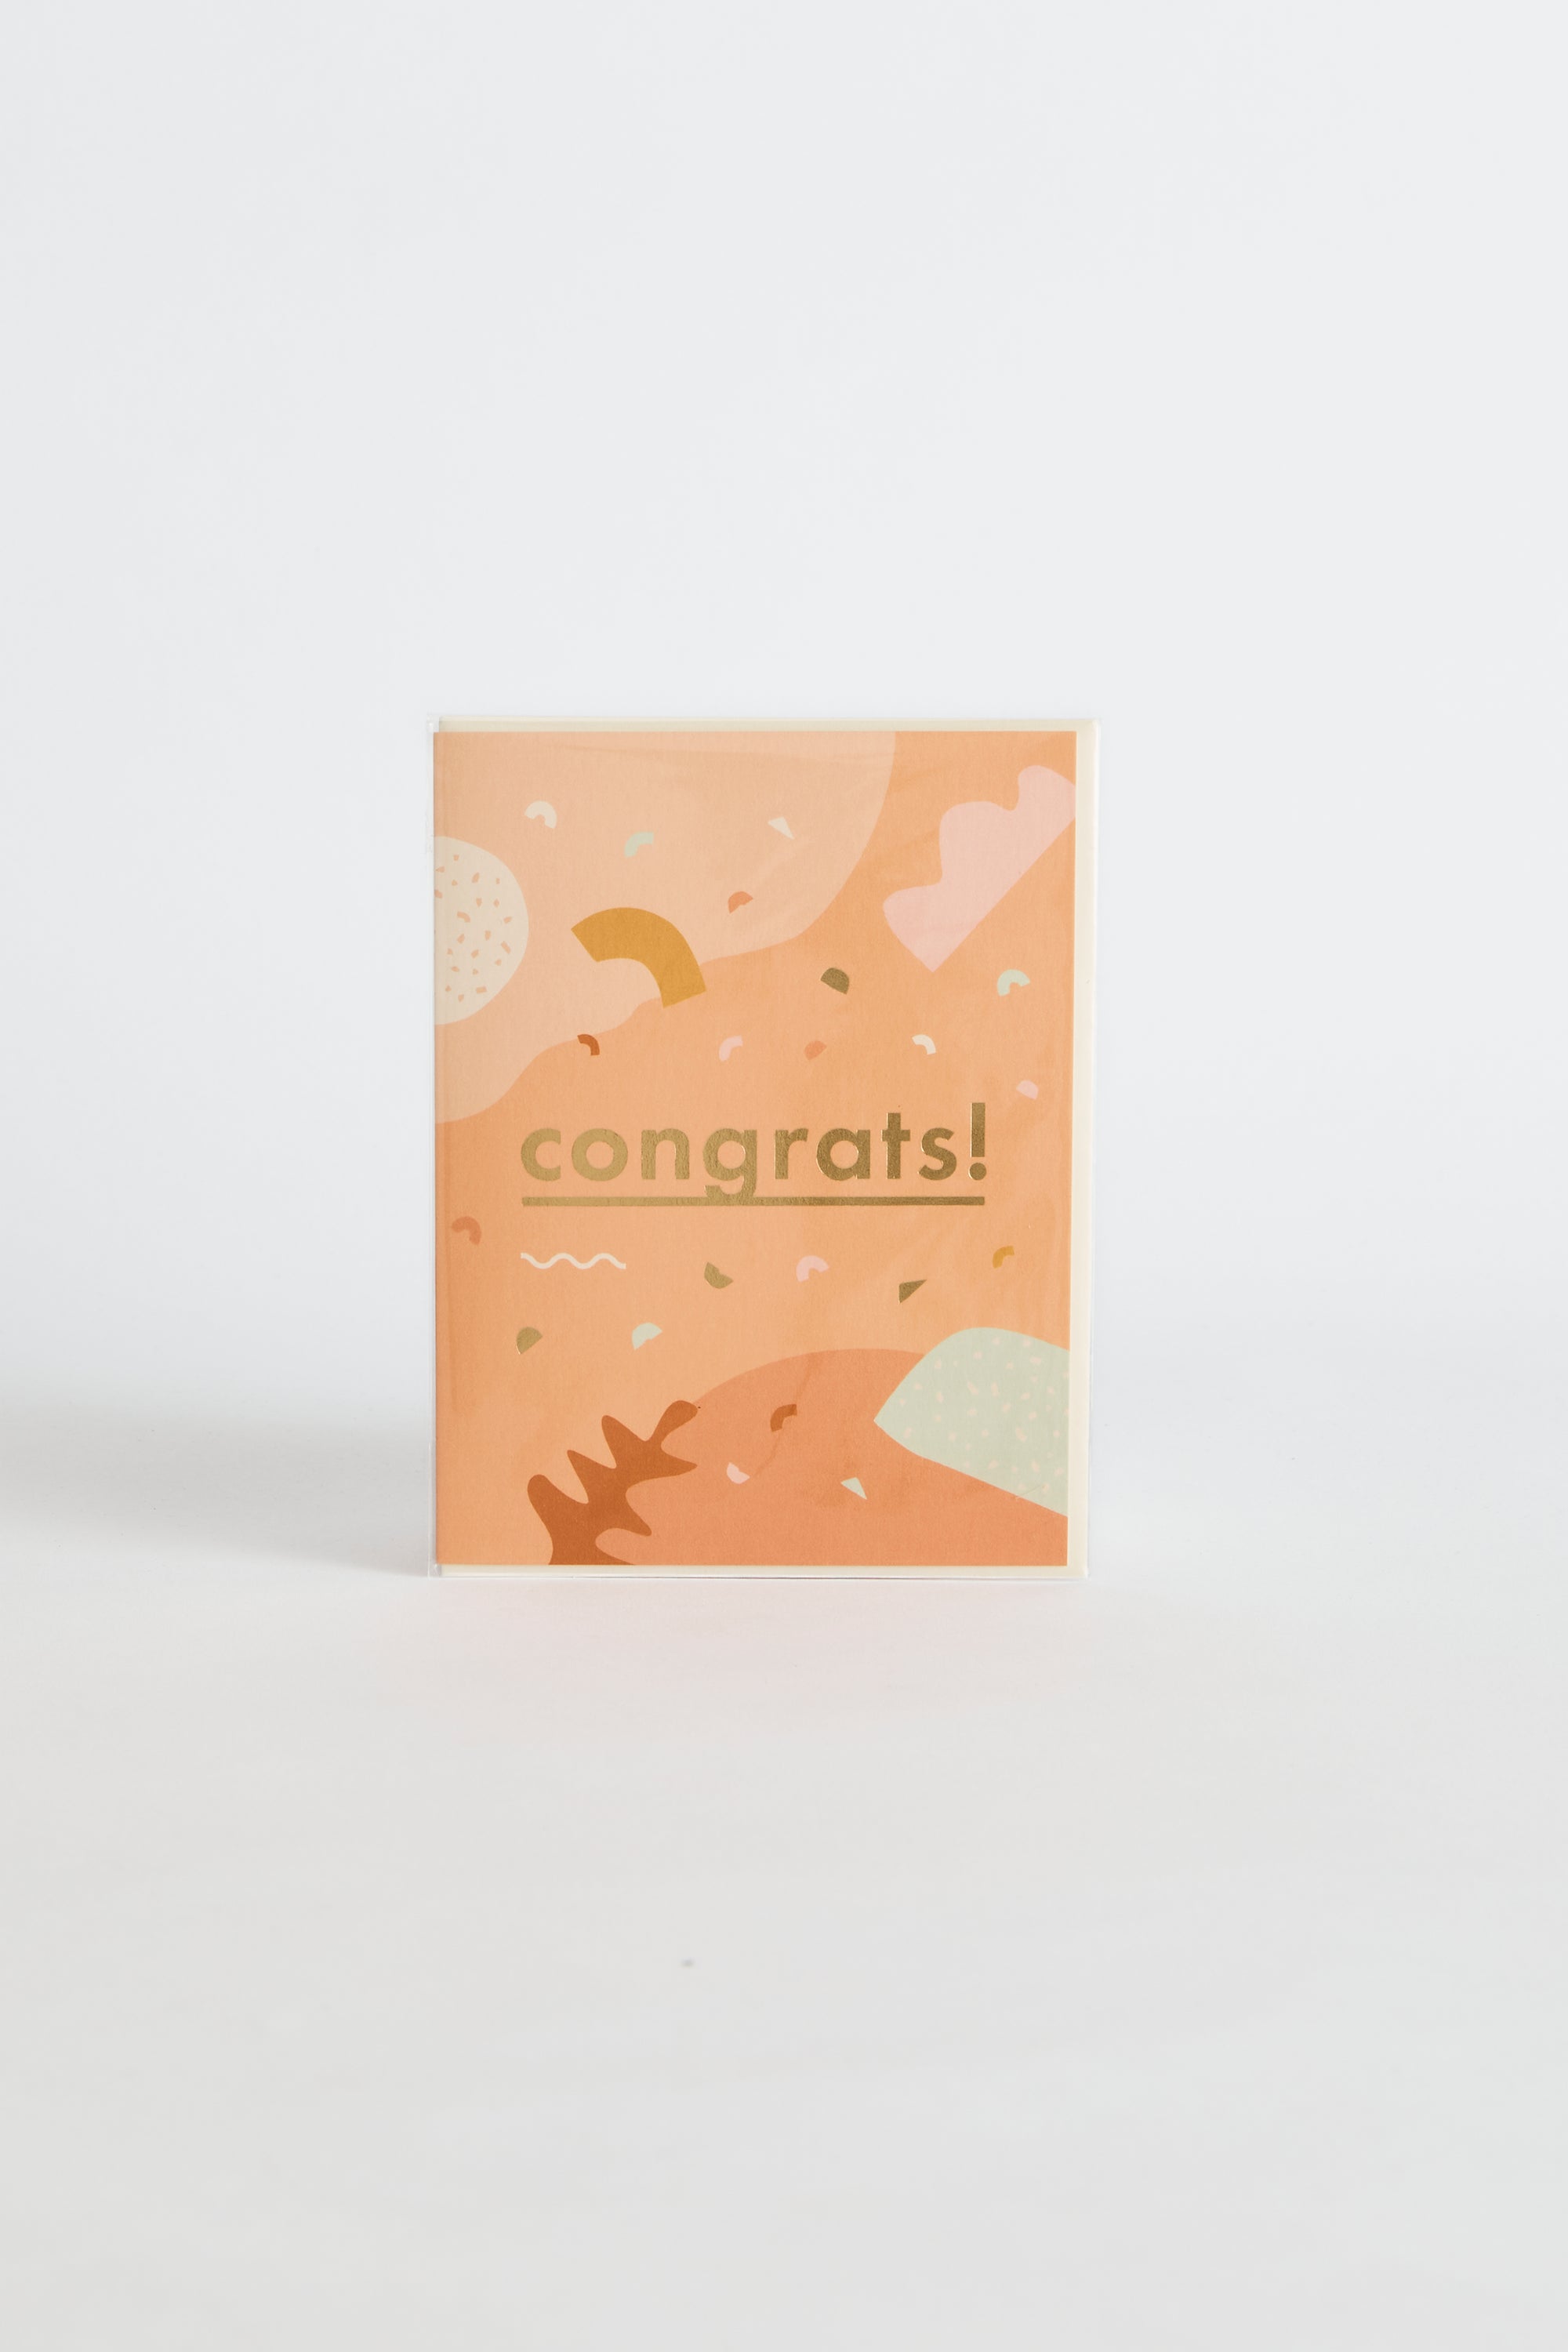 Congrats Abstract Greeting Card